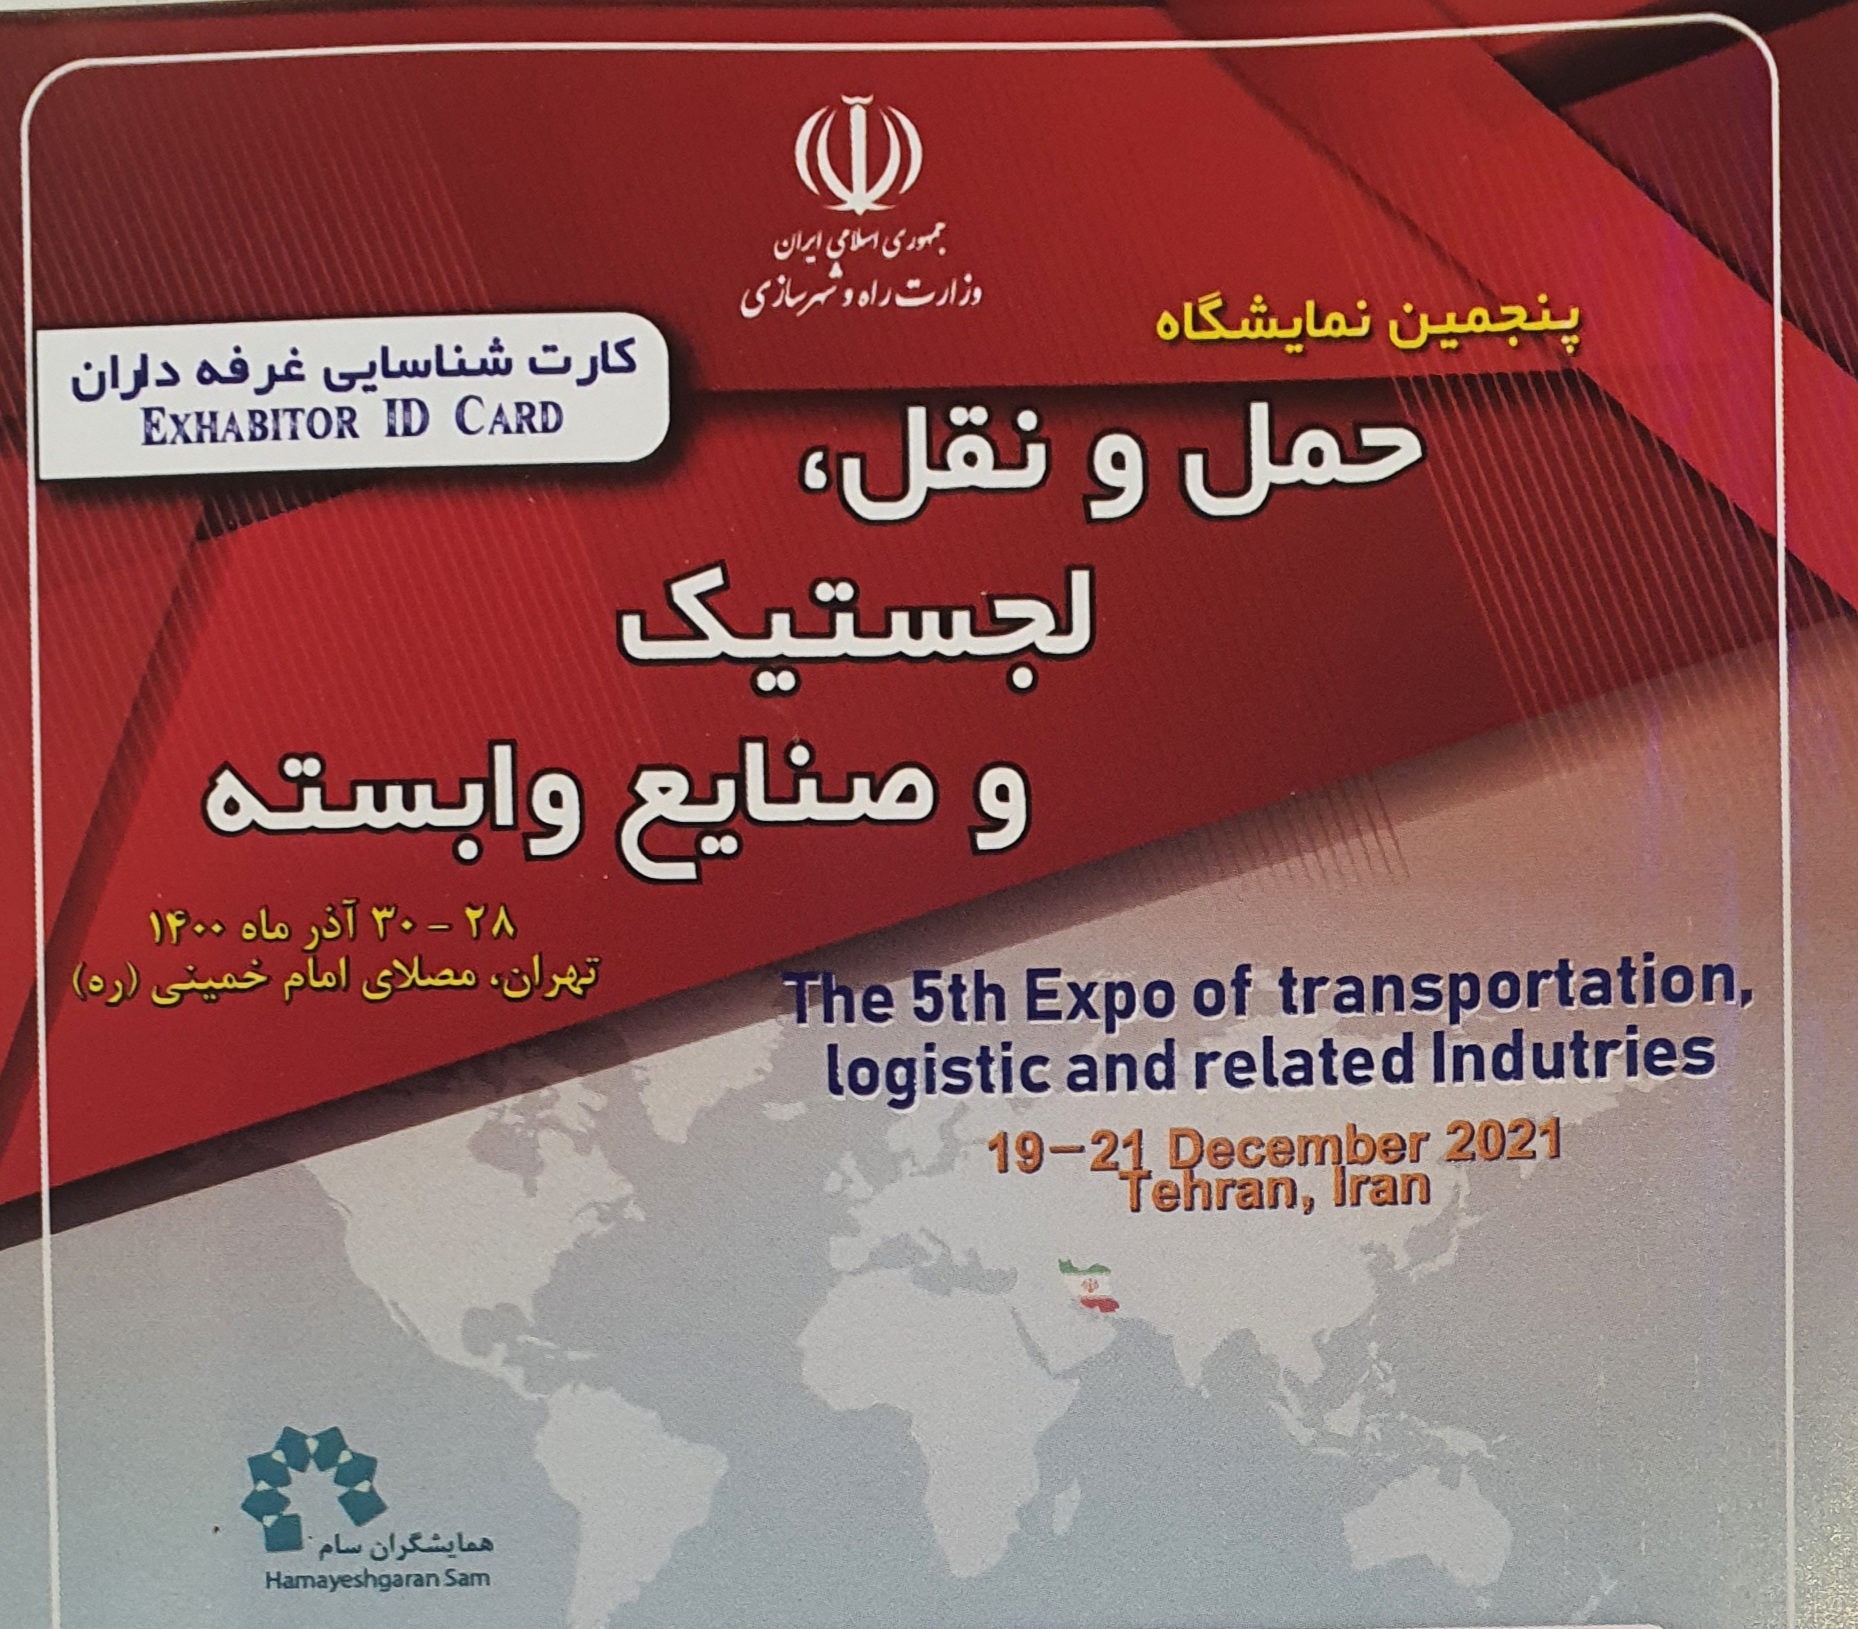 افتتاح پنجمین نمایشگاه حمل و نقل ، لجستیک و صنایع وابسته